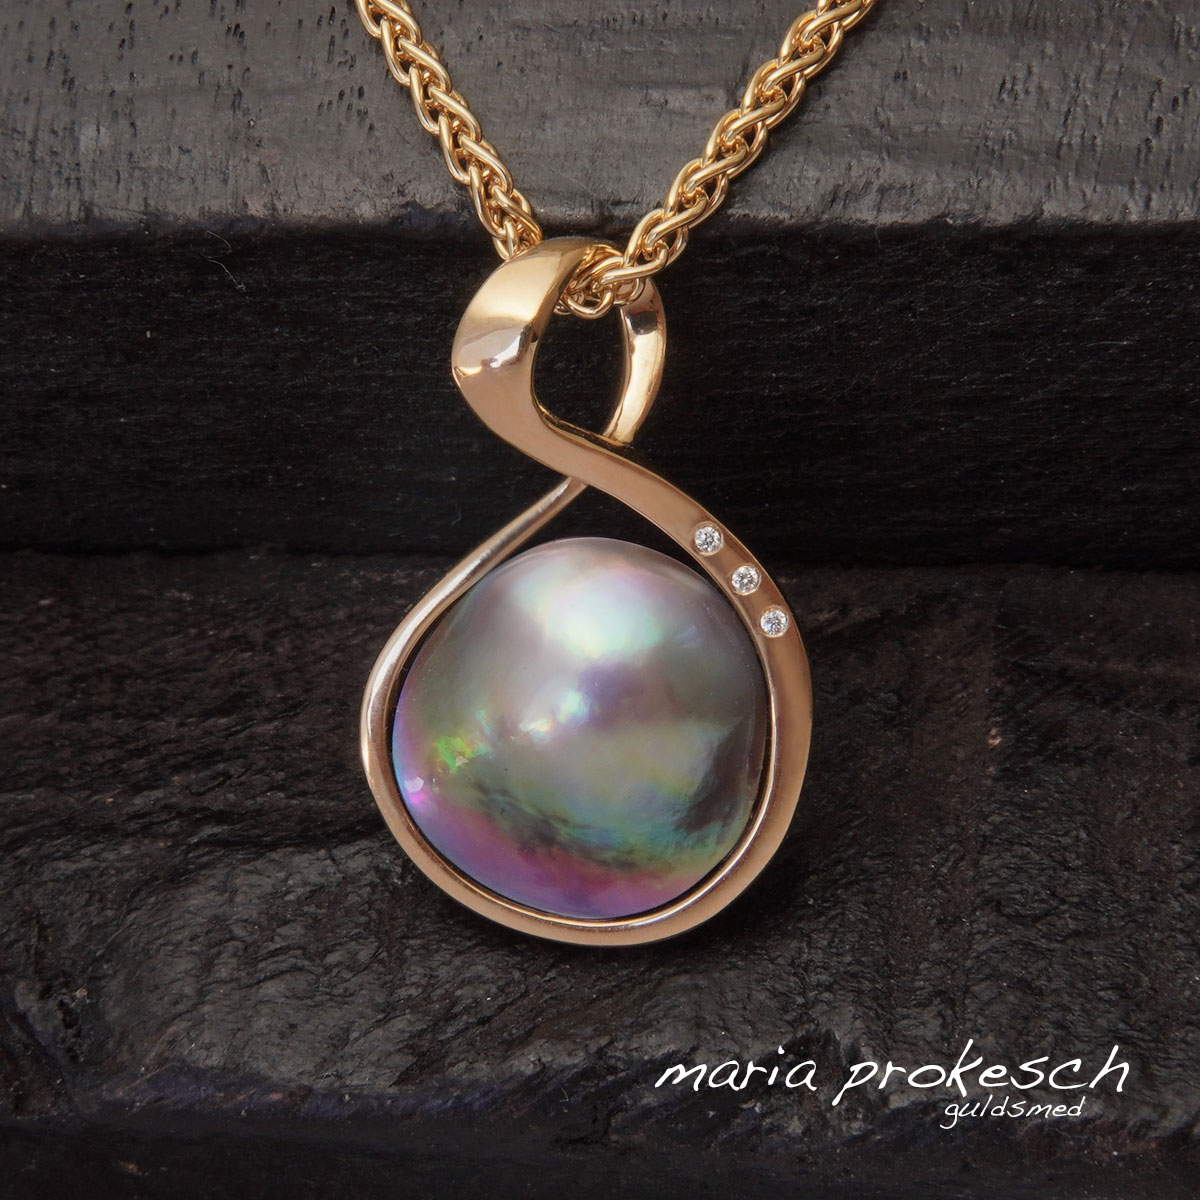 Enkelt guldvedhæng med farverig cortez mabe perle. Et anderledes design med elegant guldindfatning og brillante